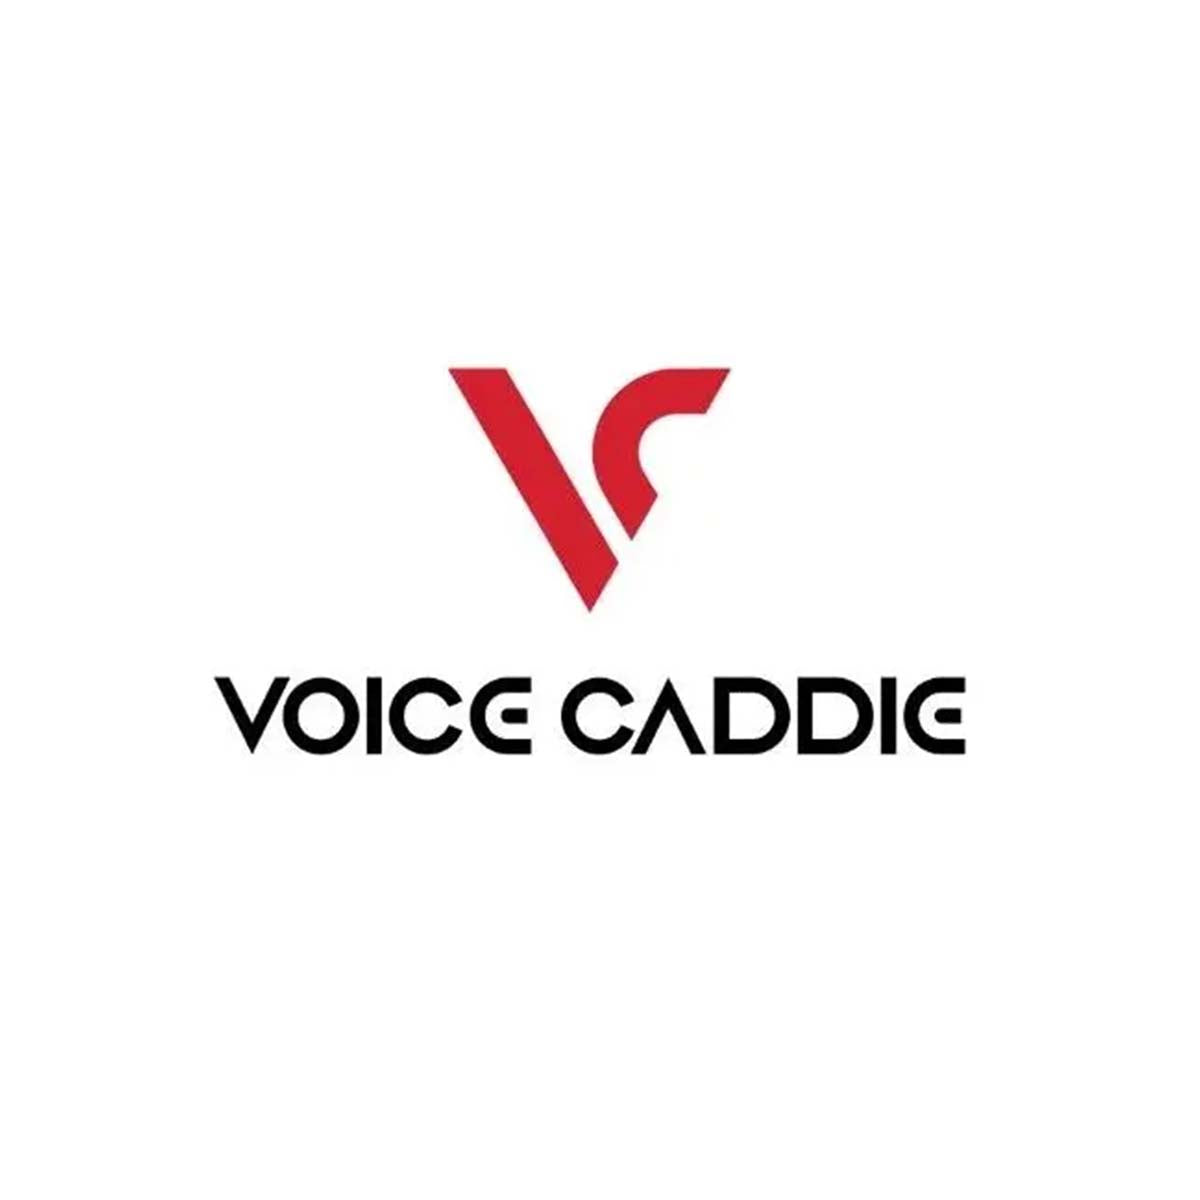 Voice Caddie.jpg__PID:a19180c9-53b3-4df3-9622-ad8d4c24b9f9